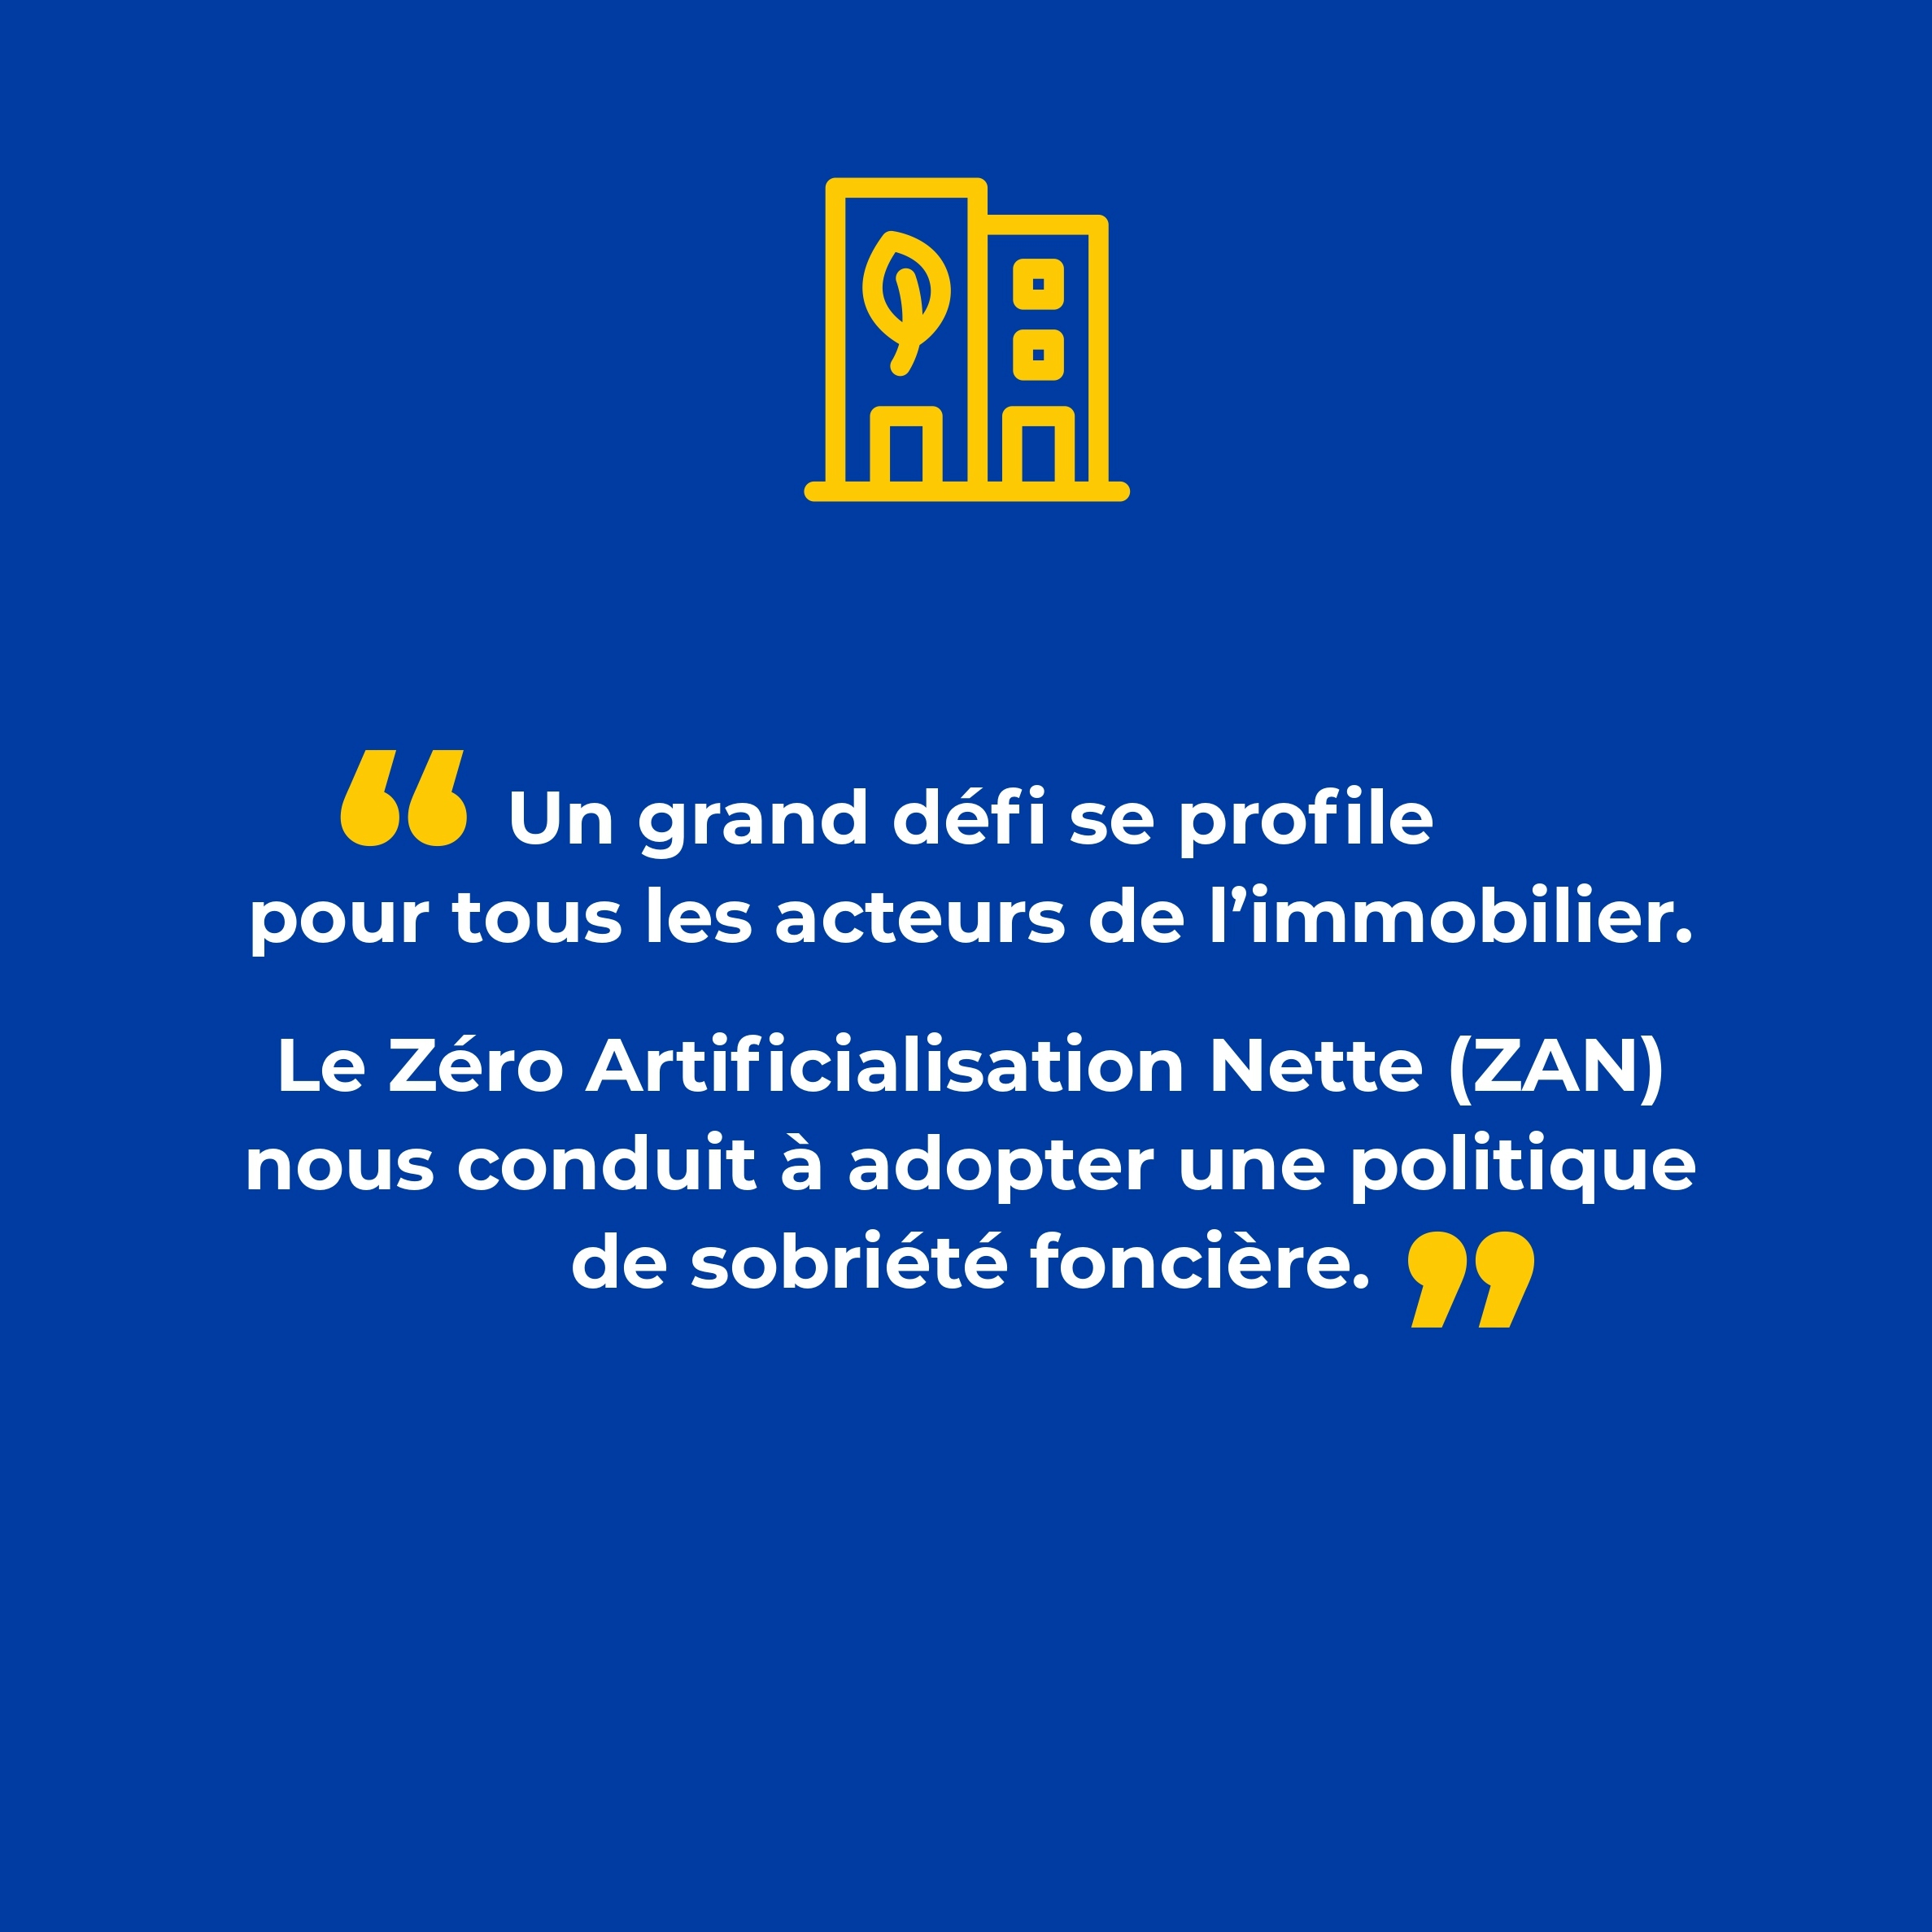 slide 5 - Pascale Gibert | "Un grand défi se profile pour tous les acteurs de l'immobilier. Le Zéro Artificialisation Nette (ZAN) nous conduit à adopter une politique de sobriété foncière."